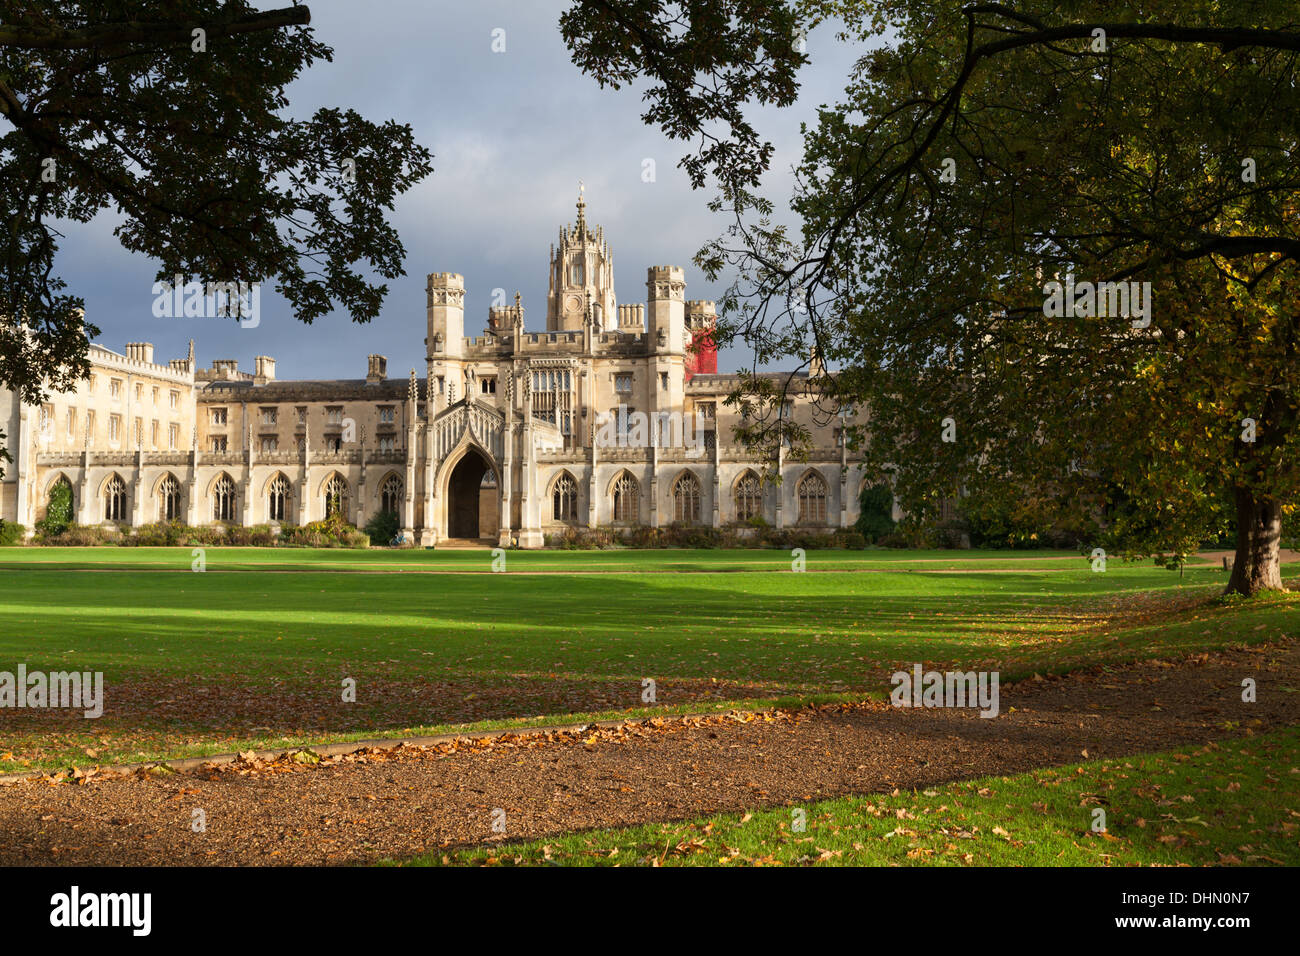 John's College, Universität Cambridge, großen, reich verzierten Gebäuden und Rasenflächen vor dem College. Stockfoto